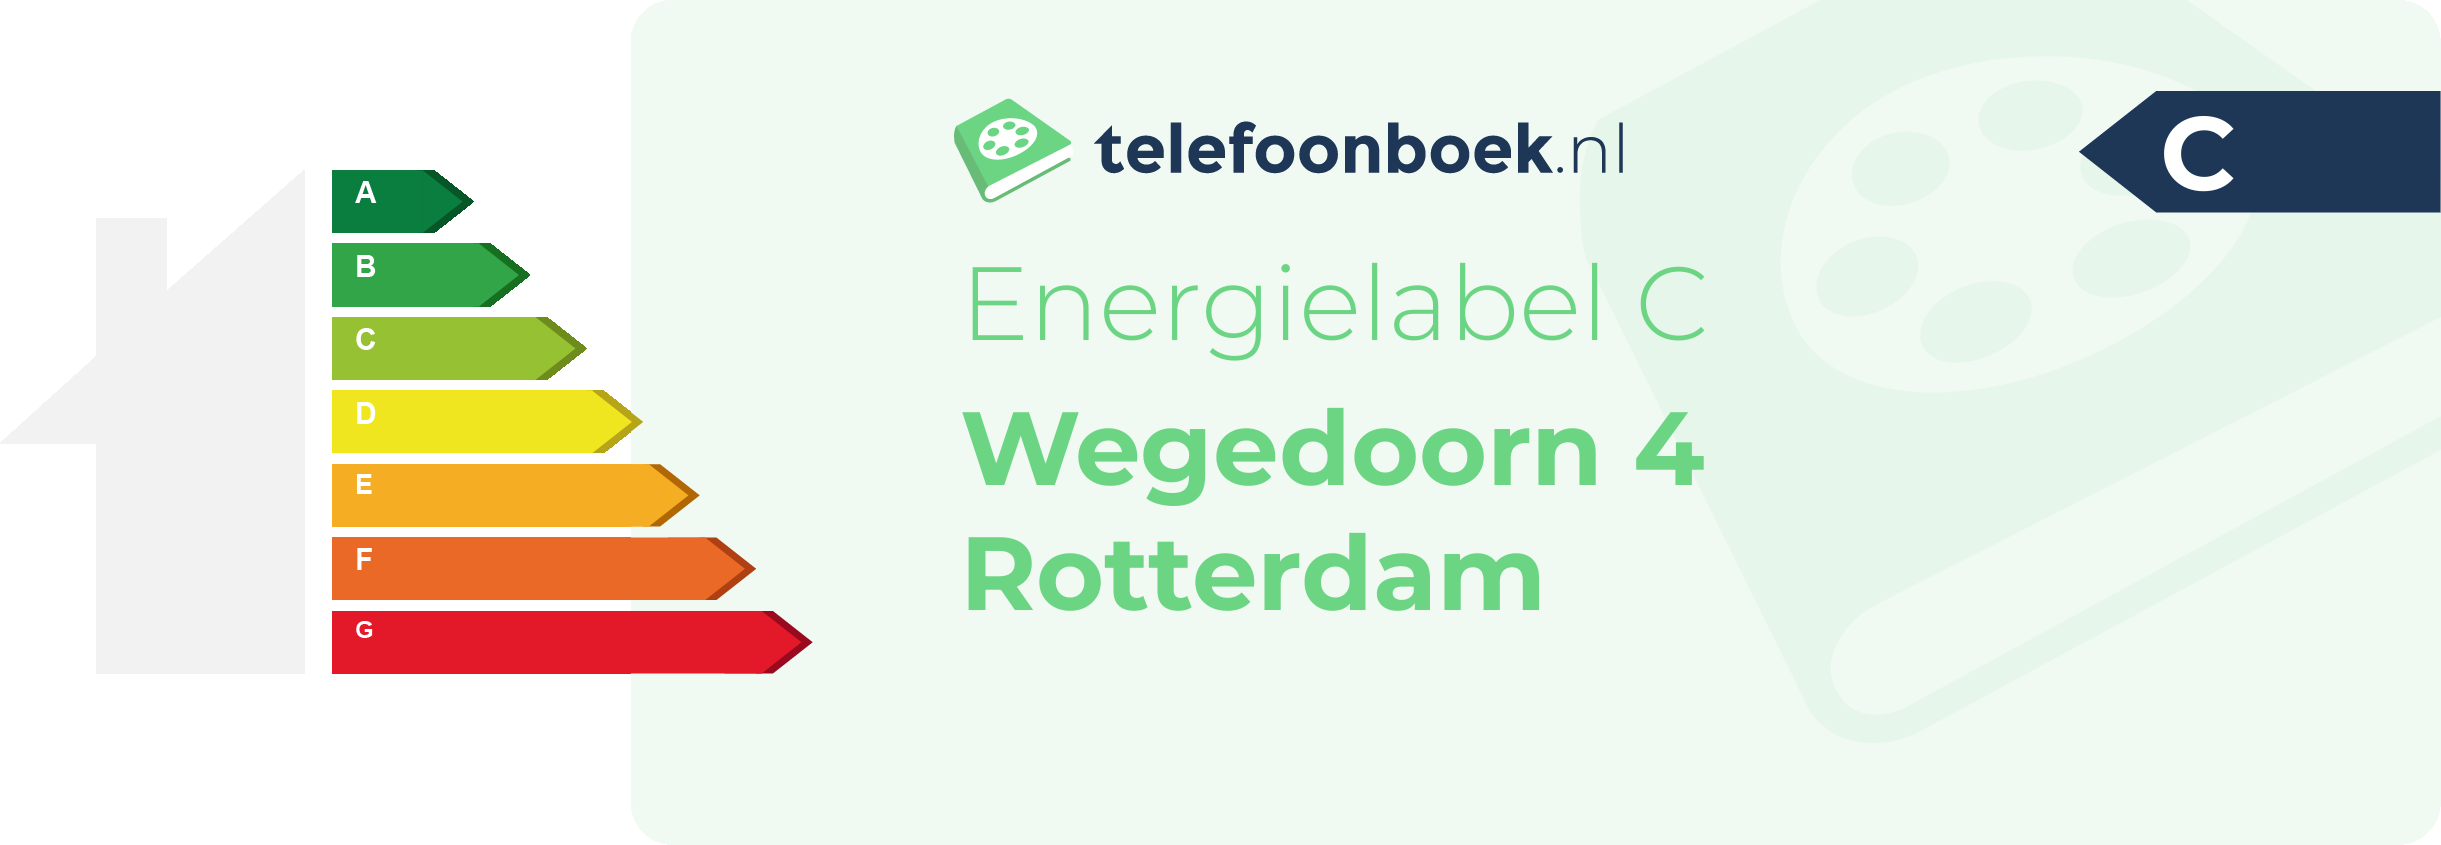 Energielabel Wegedoorn 4 Rotterdam